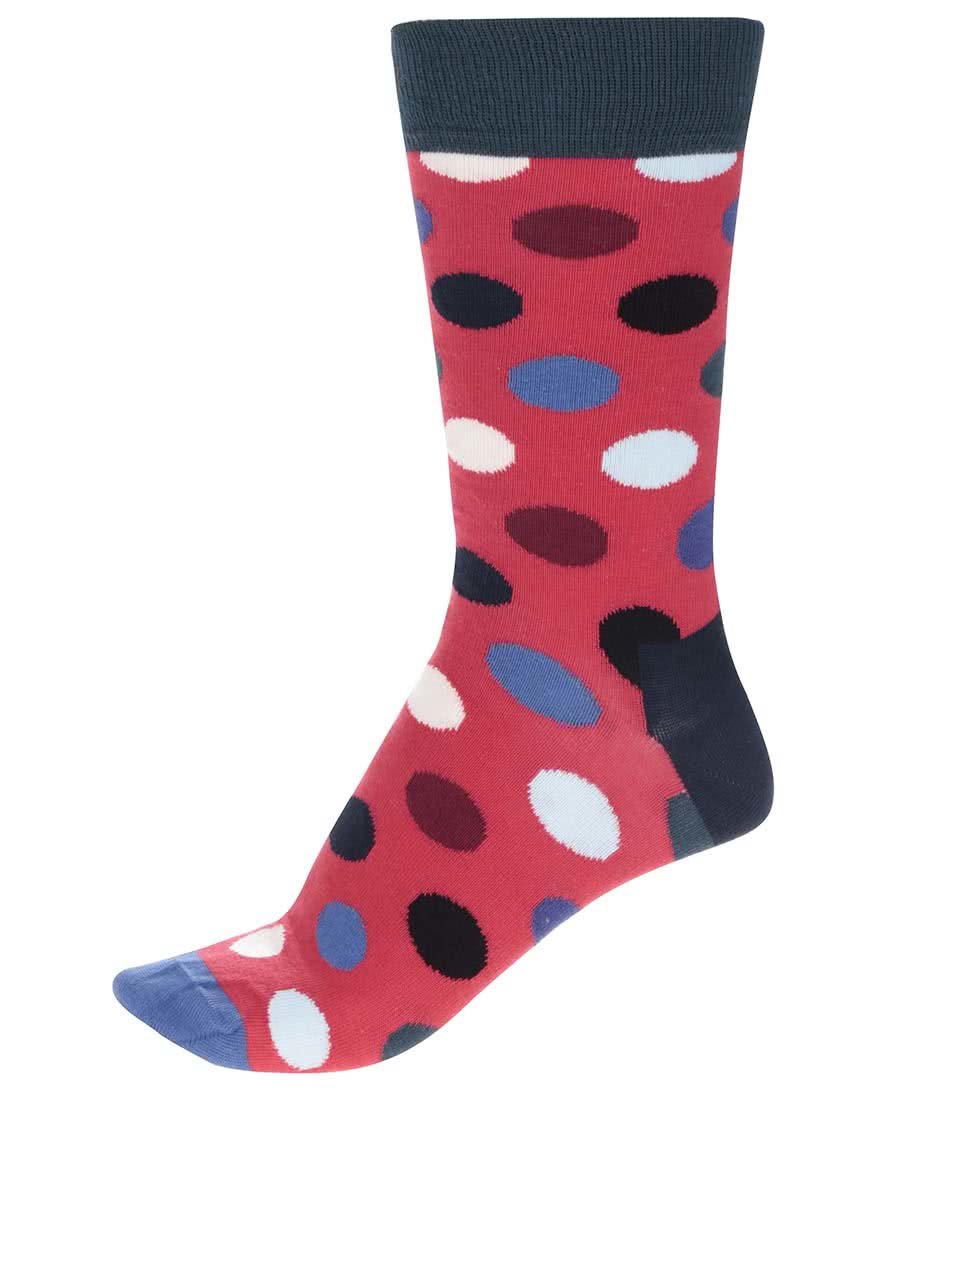 Modro-červené unisex ponožky Happy Socks Big Dot